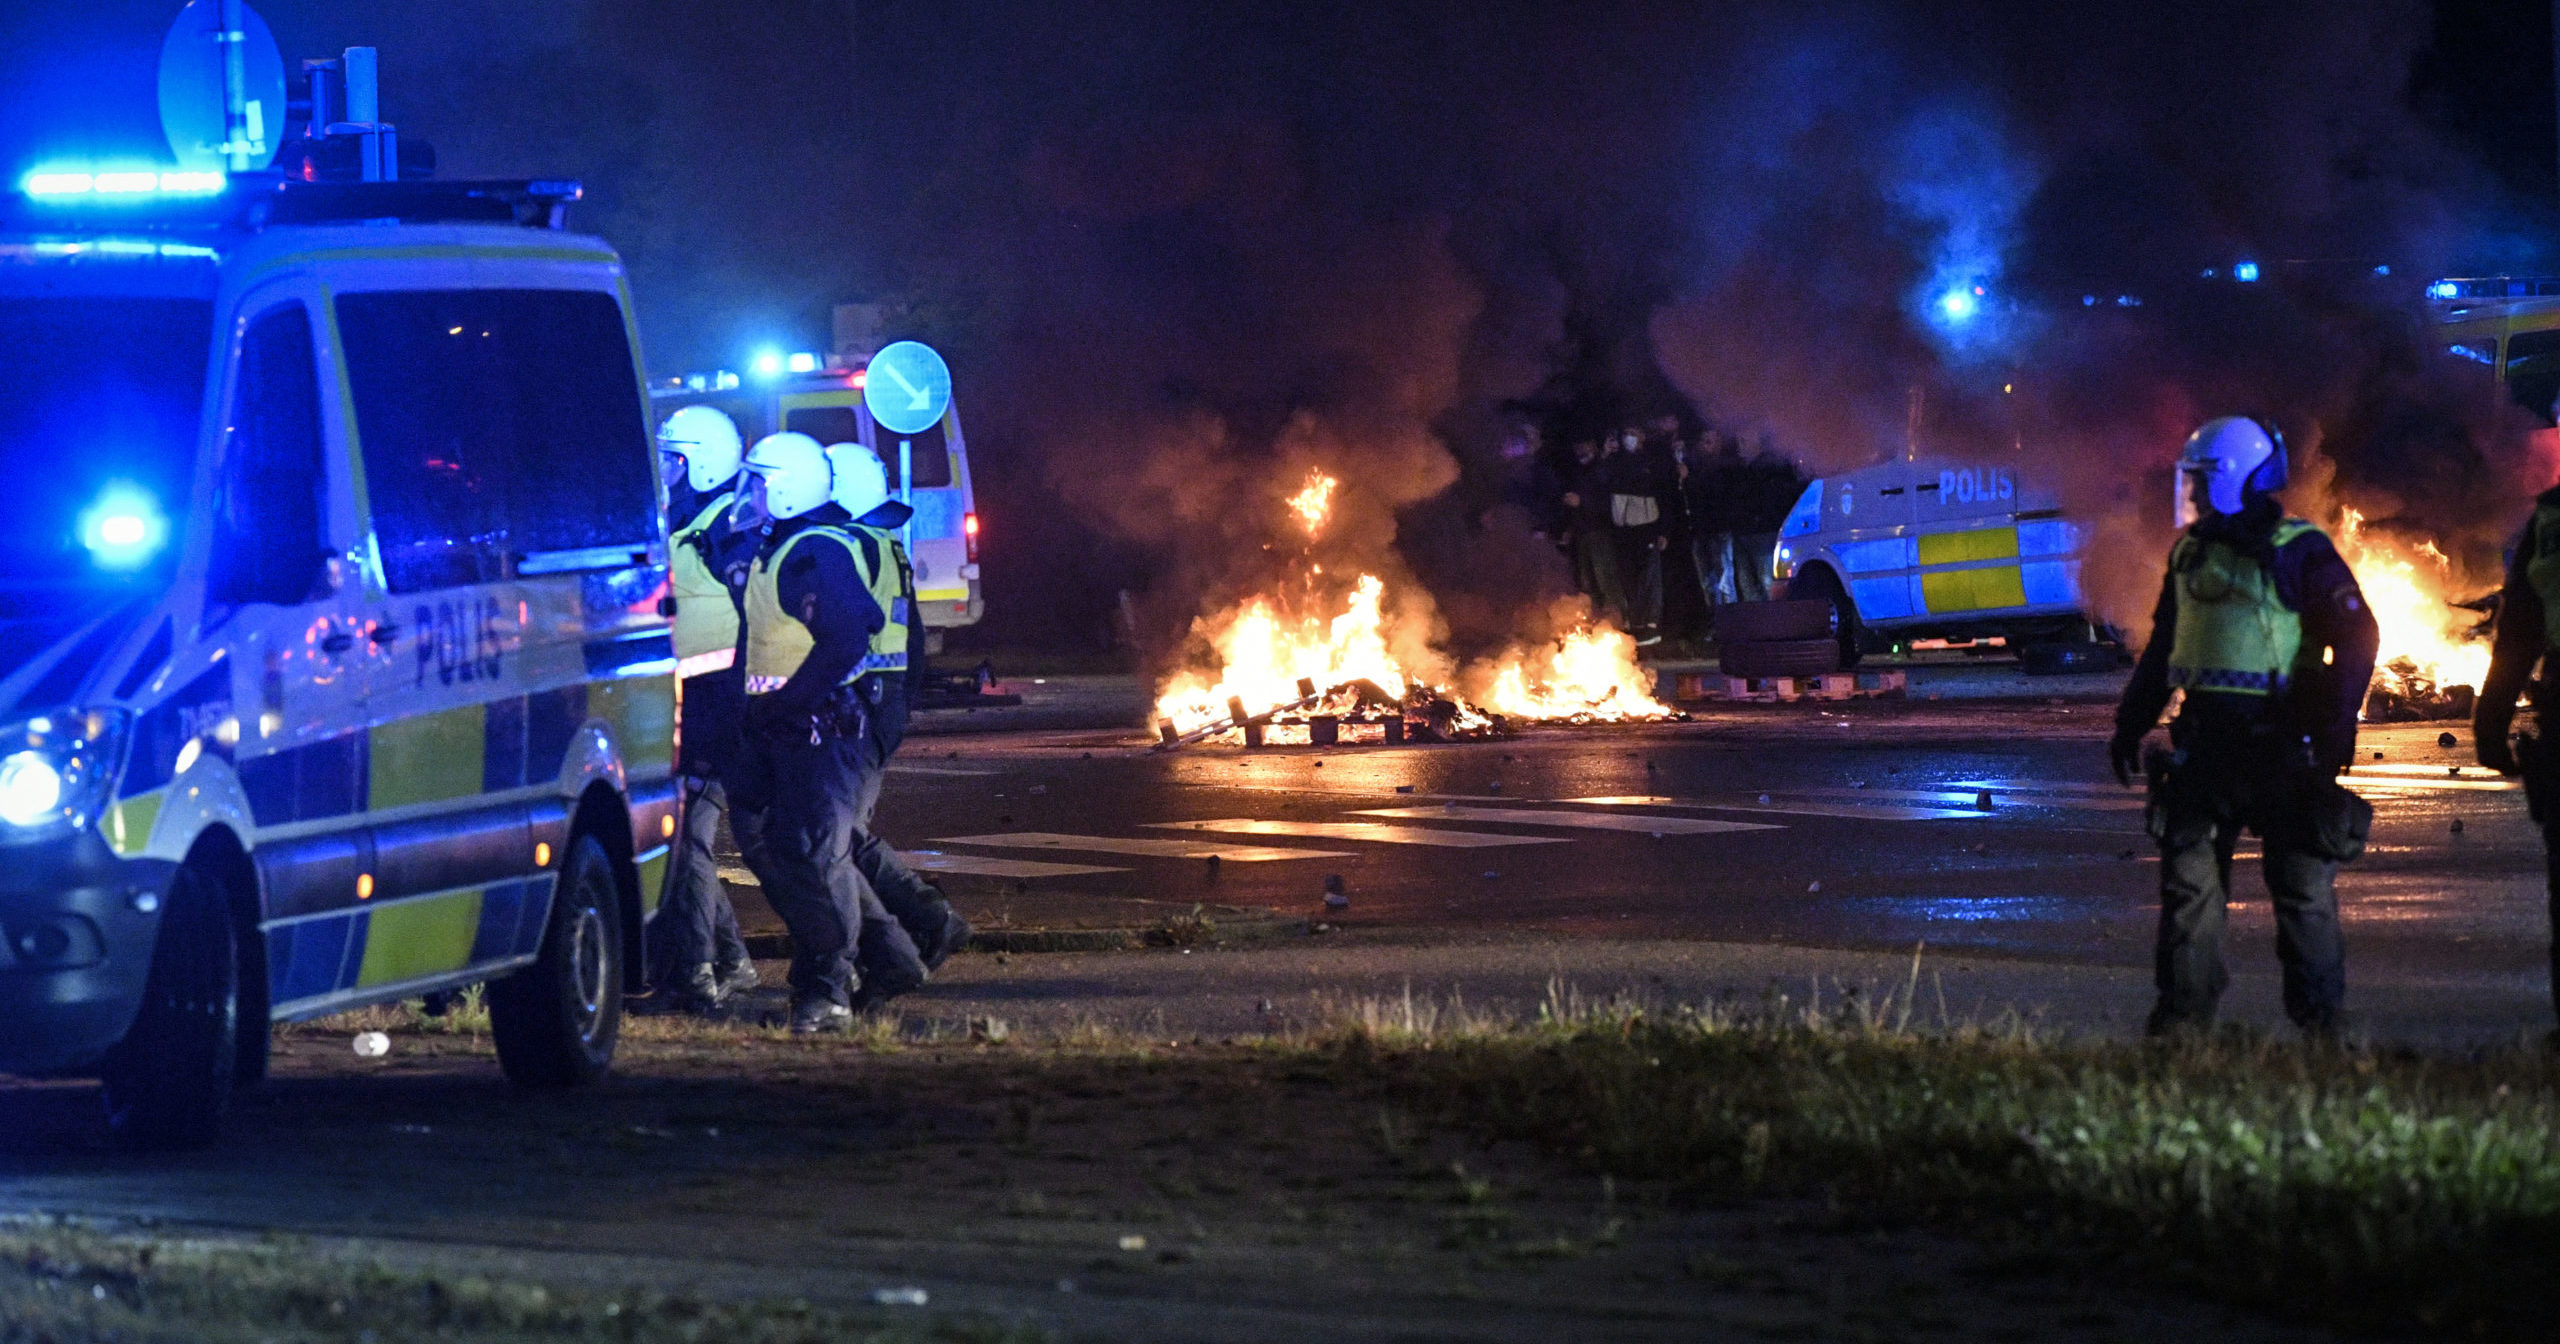 Video Of Burning Quran Sparks Violent Rioting In Sweden